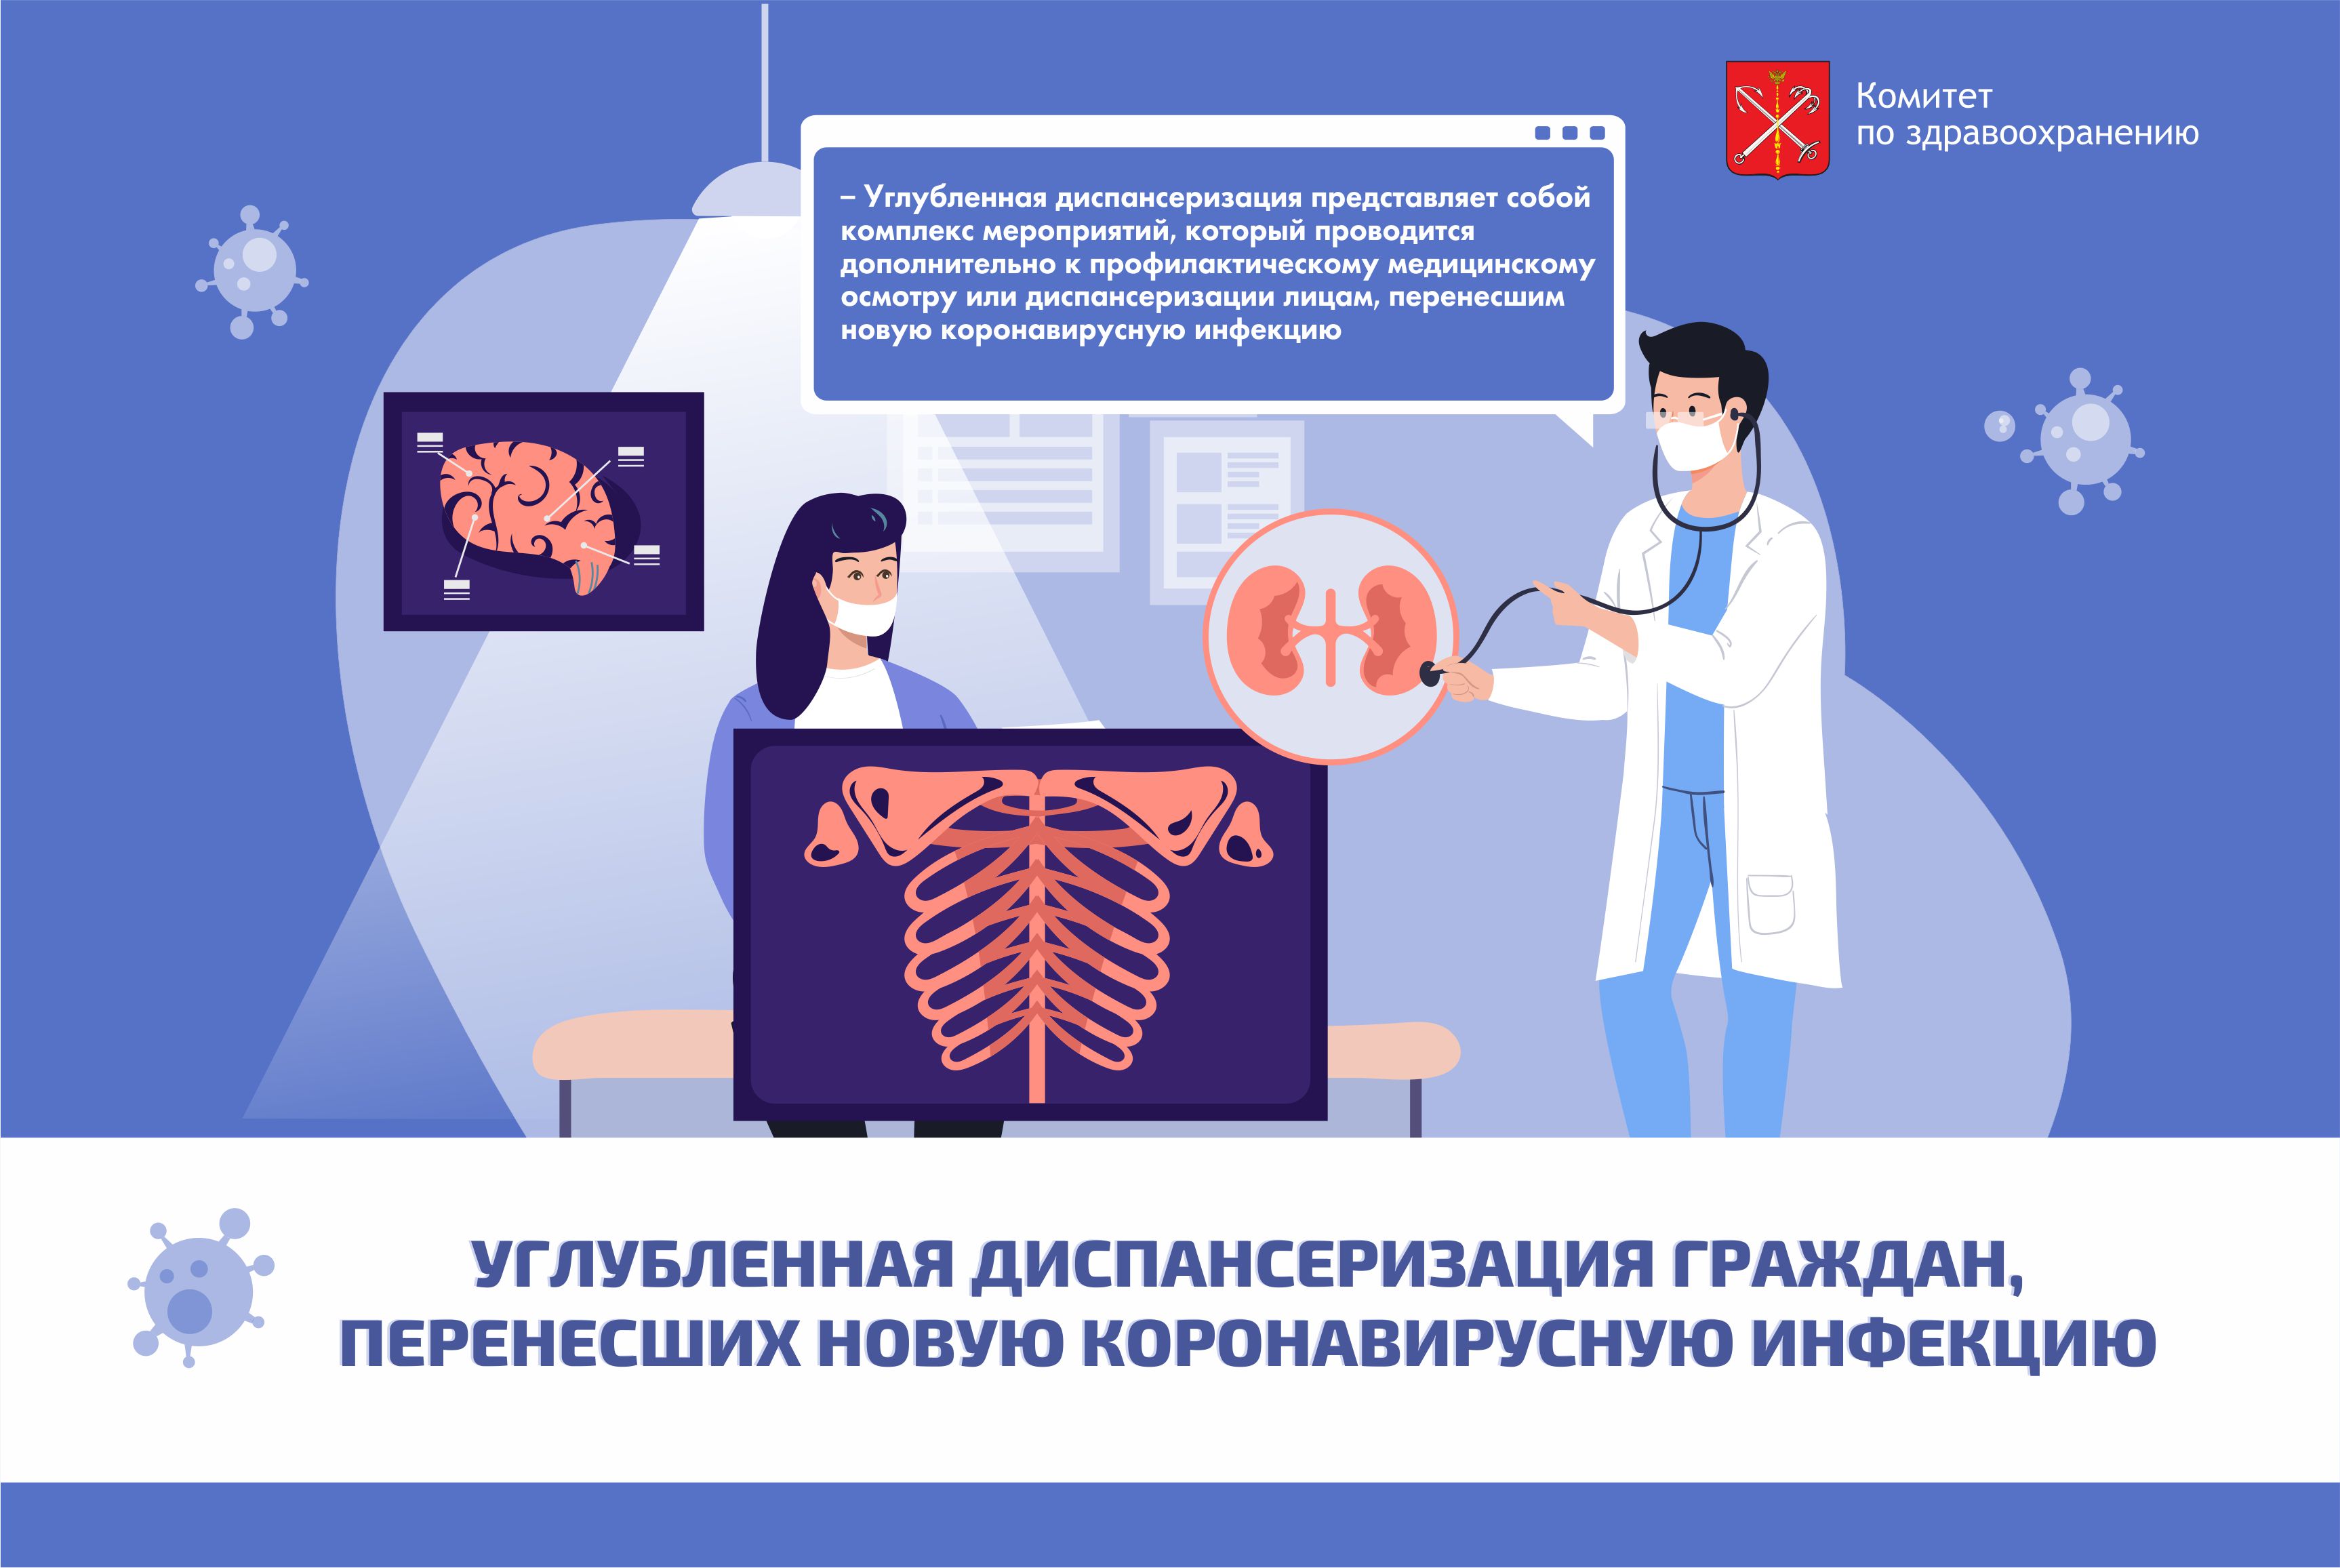 Комитет по здравоохранению Санкт-Петербурга | Диспансеризация